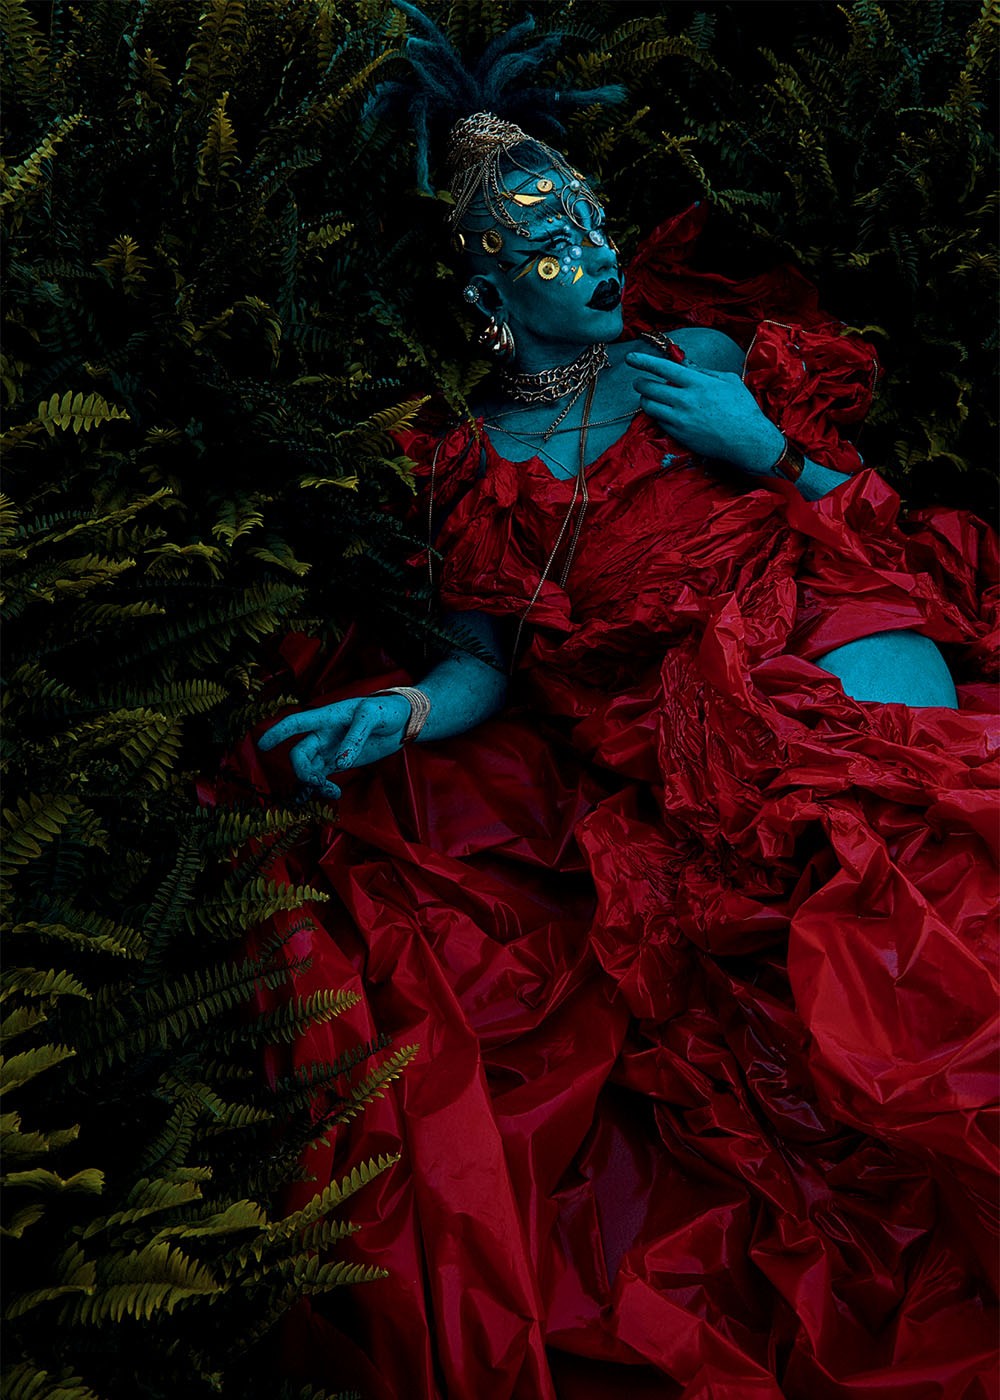 Alma Negrot produziu estas fotos exclusivamente para a Vogue, inspirado nas criações de Alexander McQueen (Foto: Léo Fagherazzi)